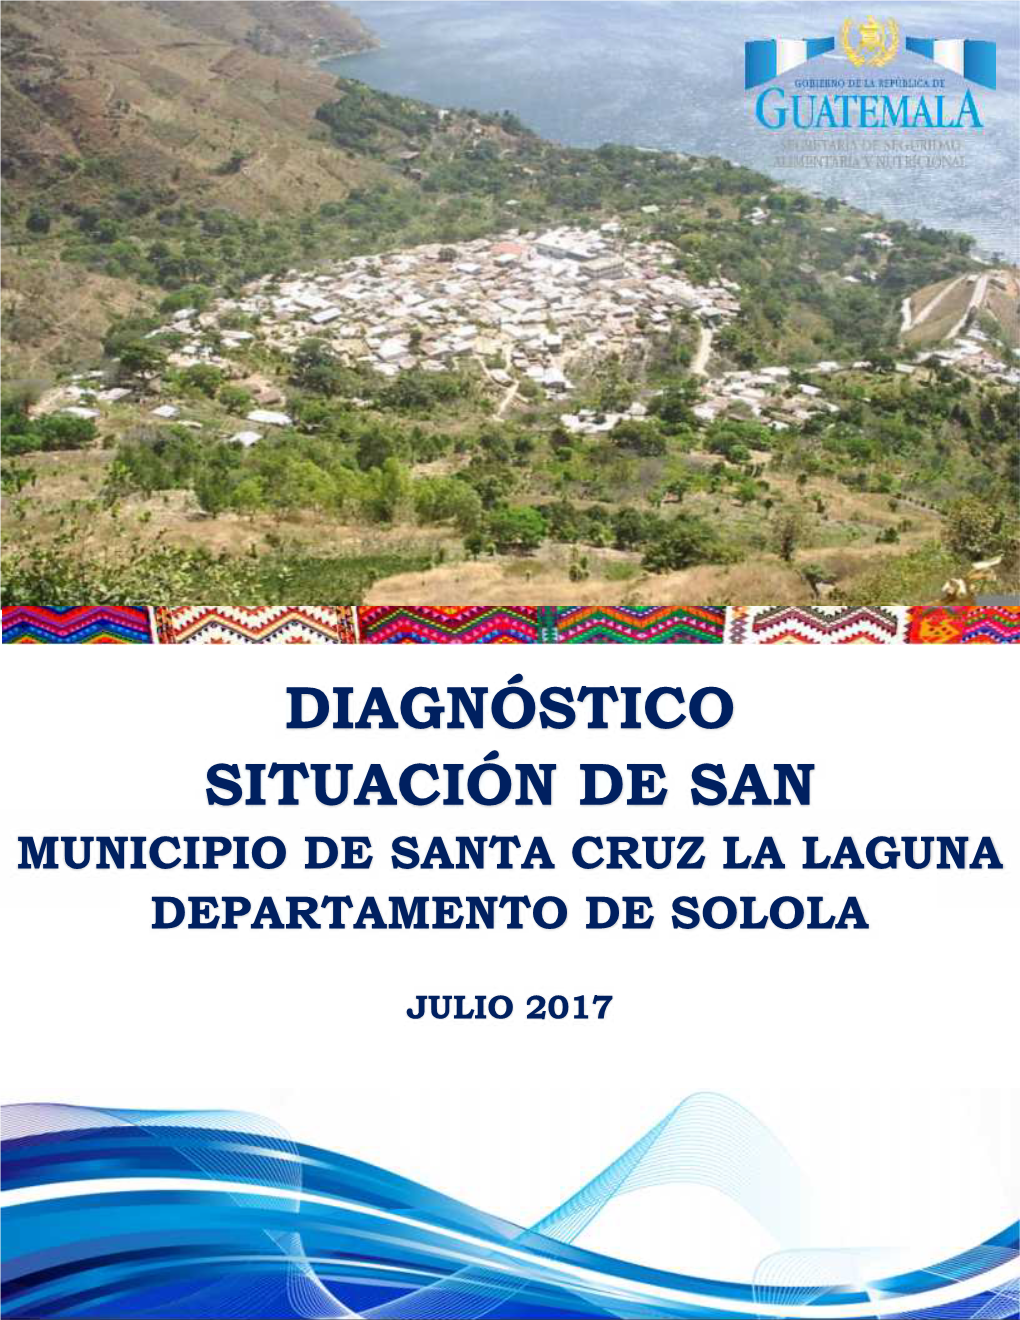 Diagnóstico Situación De San Municipio De Santa Cruz La Laguna Departamento De Solola